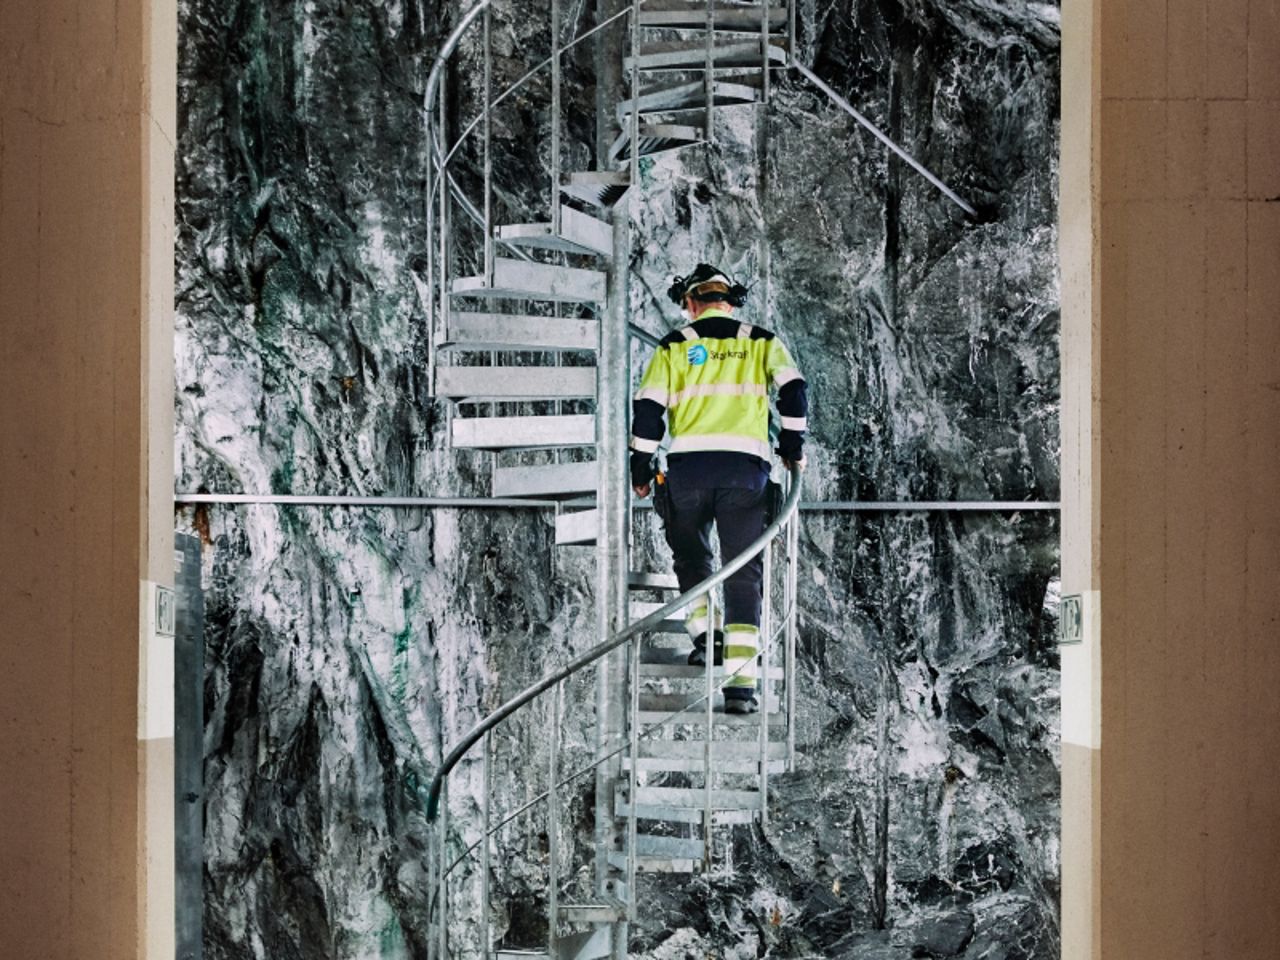 Mann går opp vindeltrapp inne i kraftverk